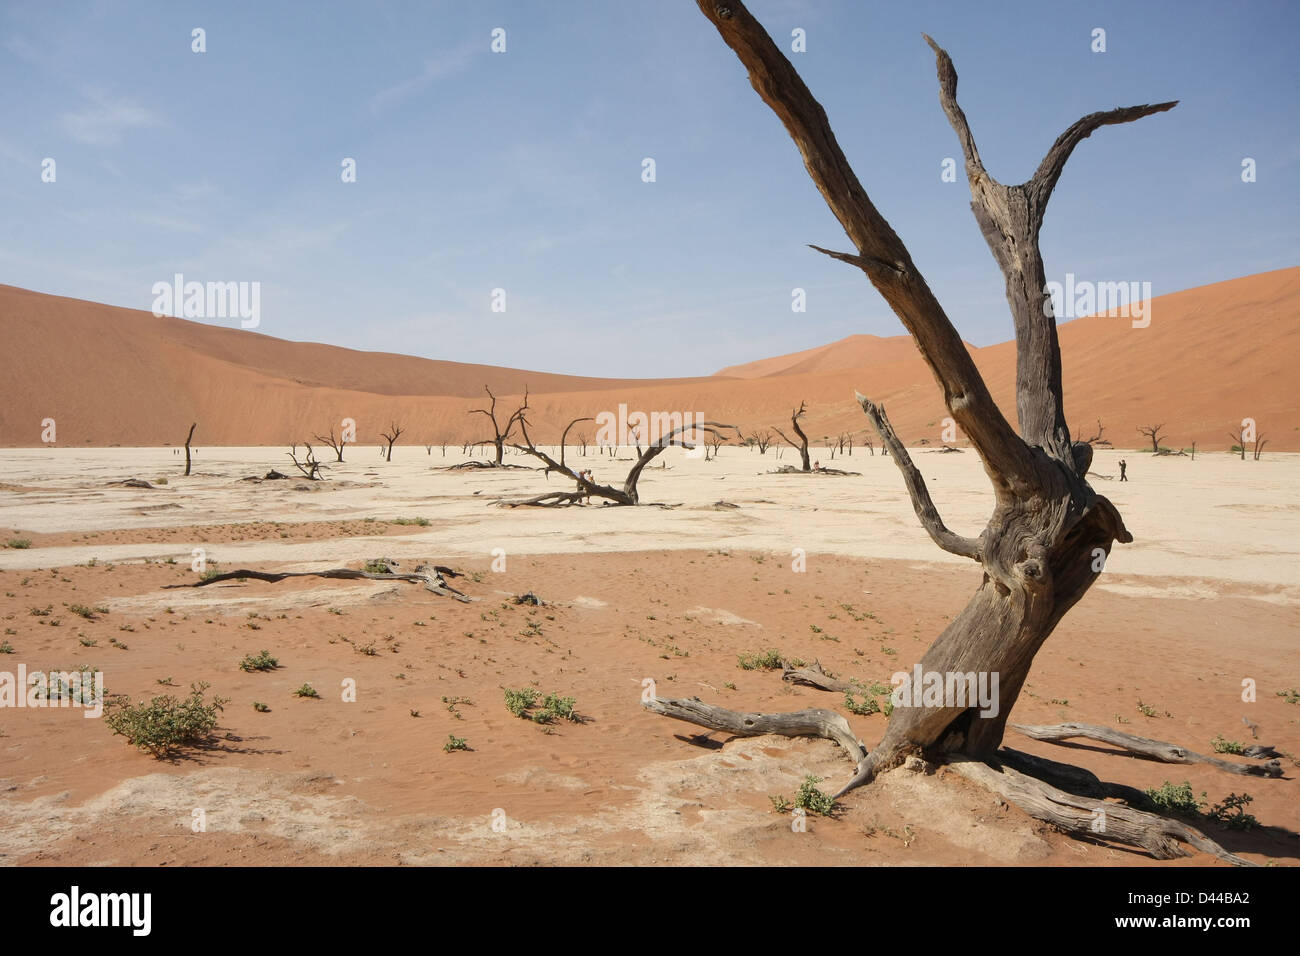 Dead Camelthorn tree, Dead Vlei, near Sossusvlei, Namib Desert, Namib-Naukluft National Park, Namibia Stock Photo